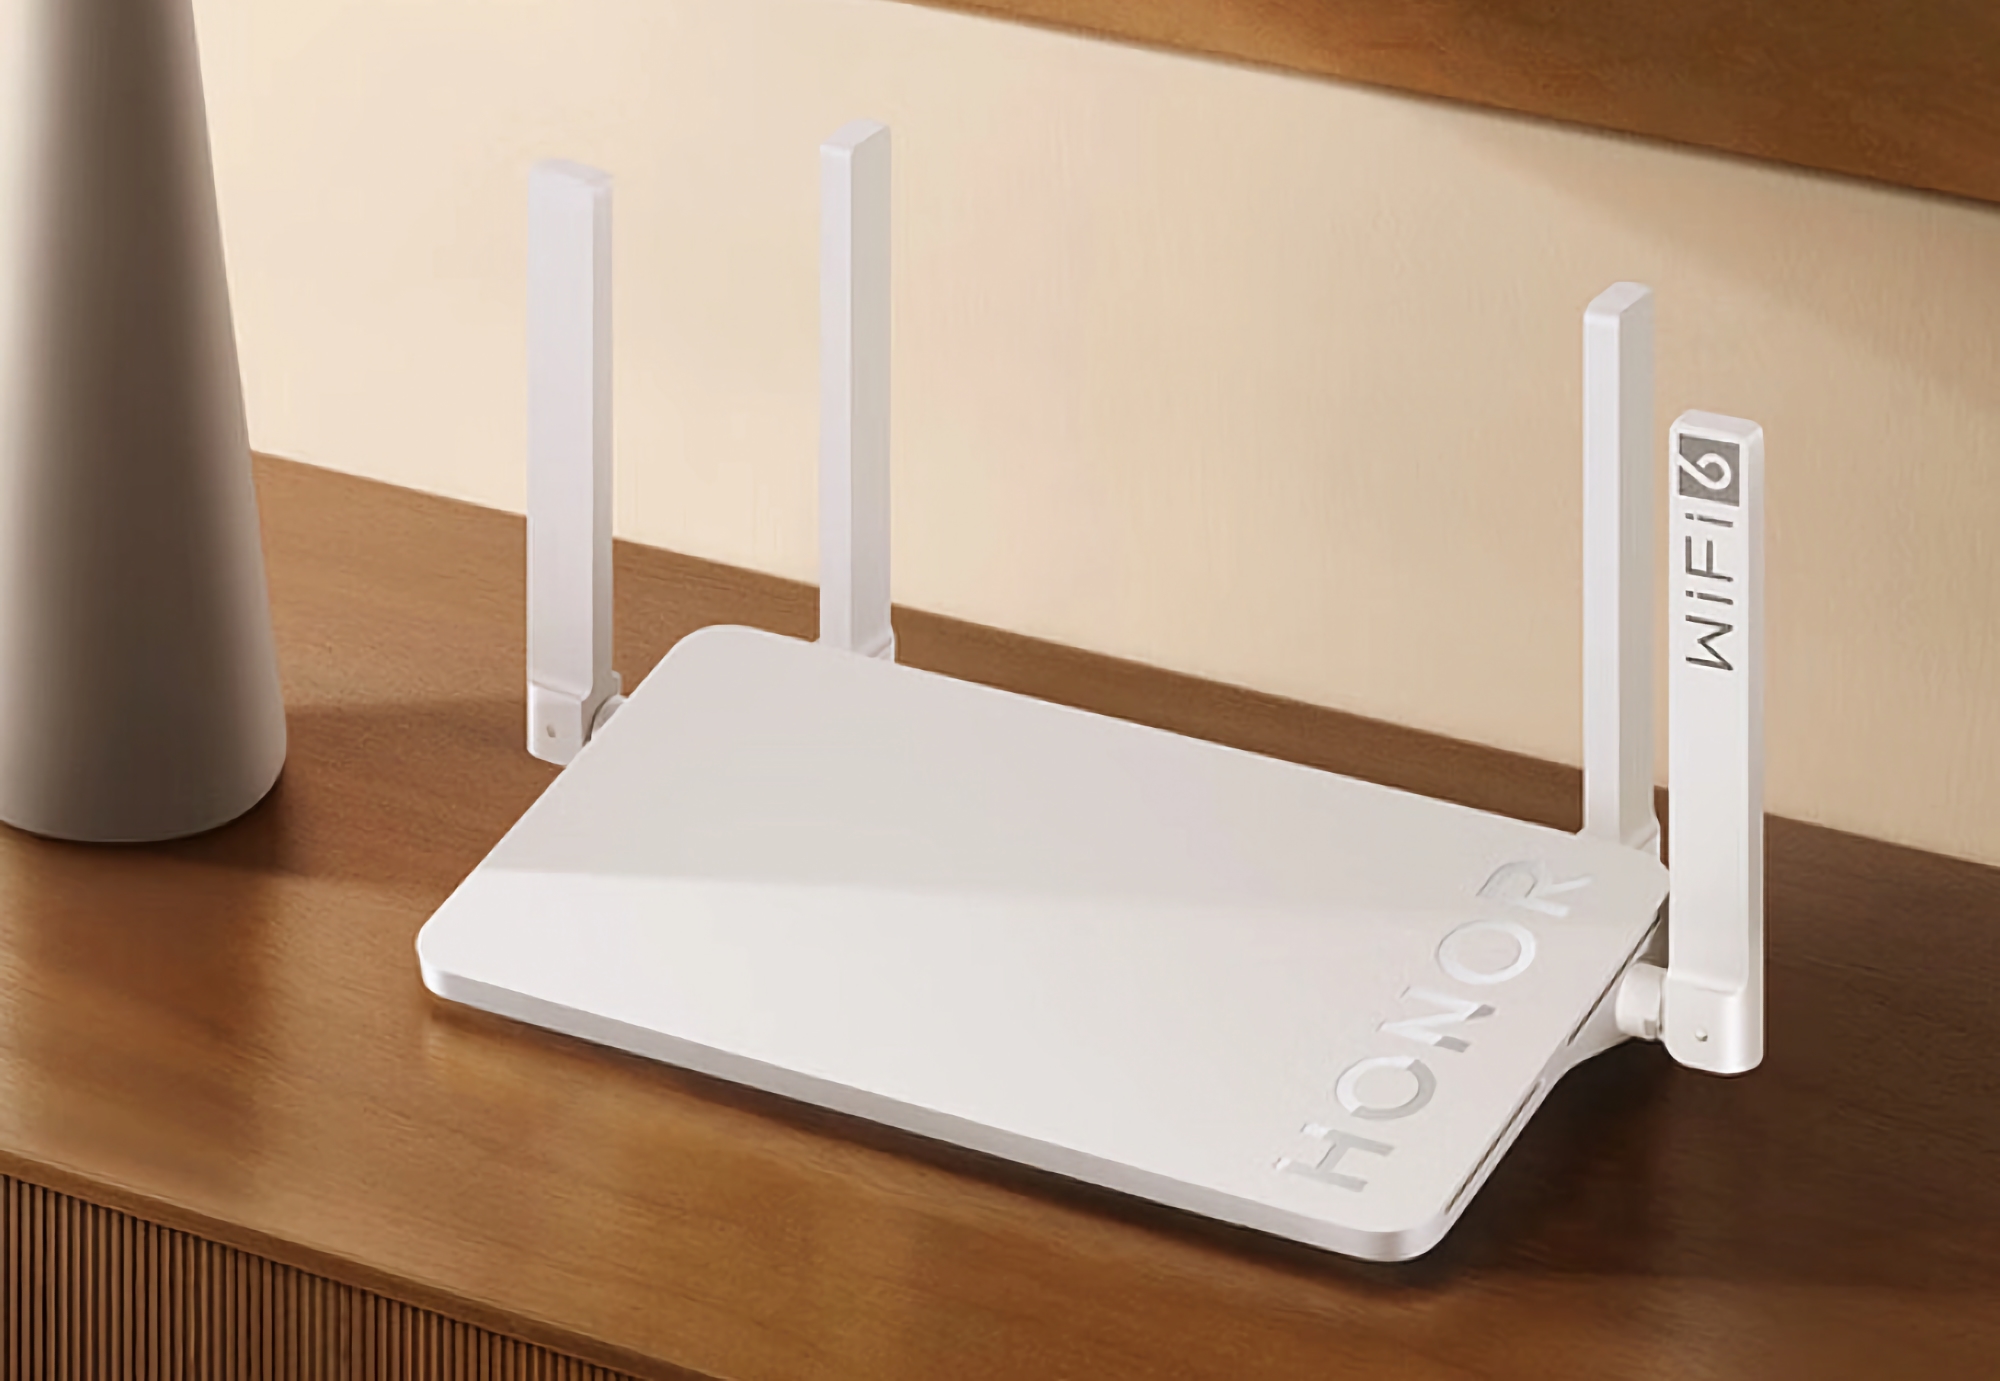 Honor ha presentato il Router X4 Pro con Wi-Fi 6 e tre porte Gigabit